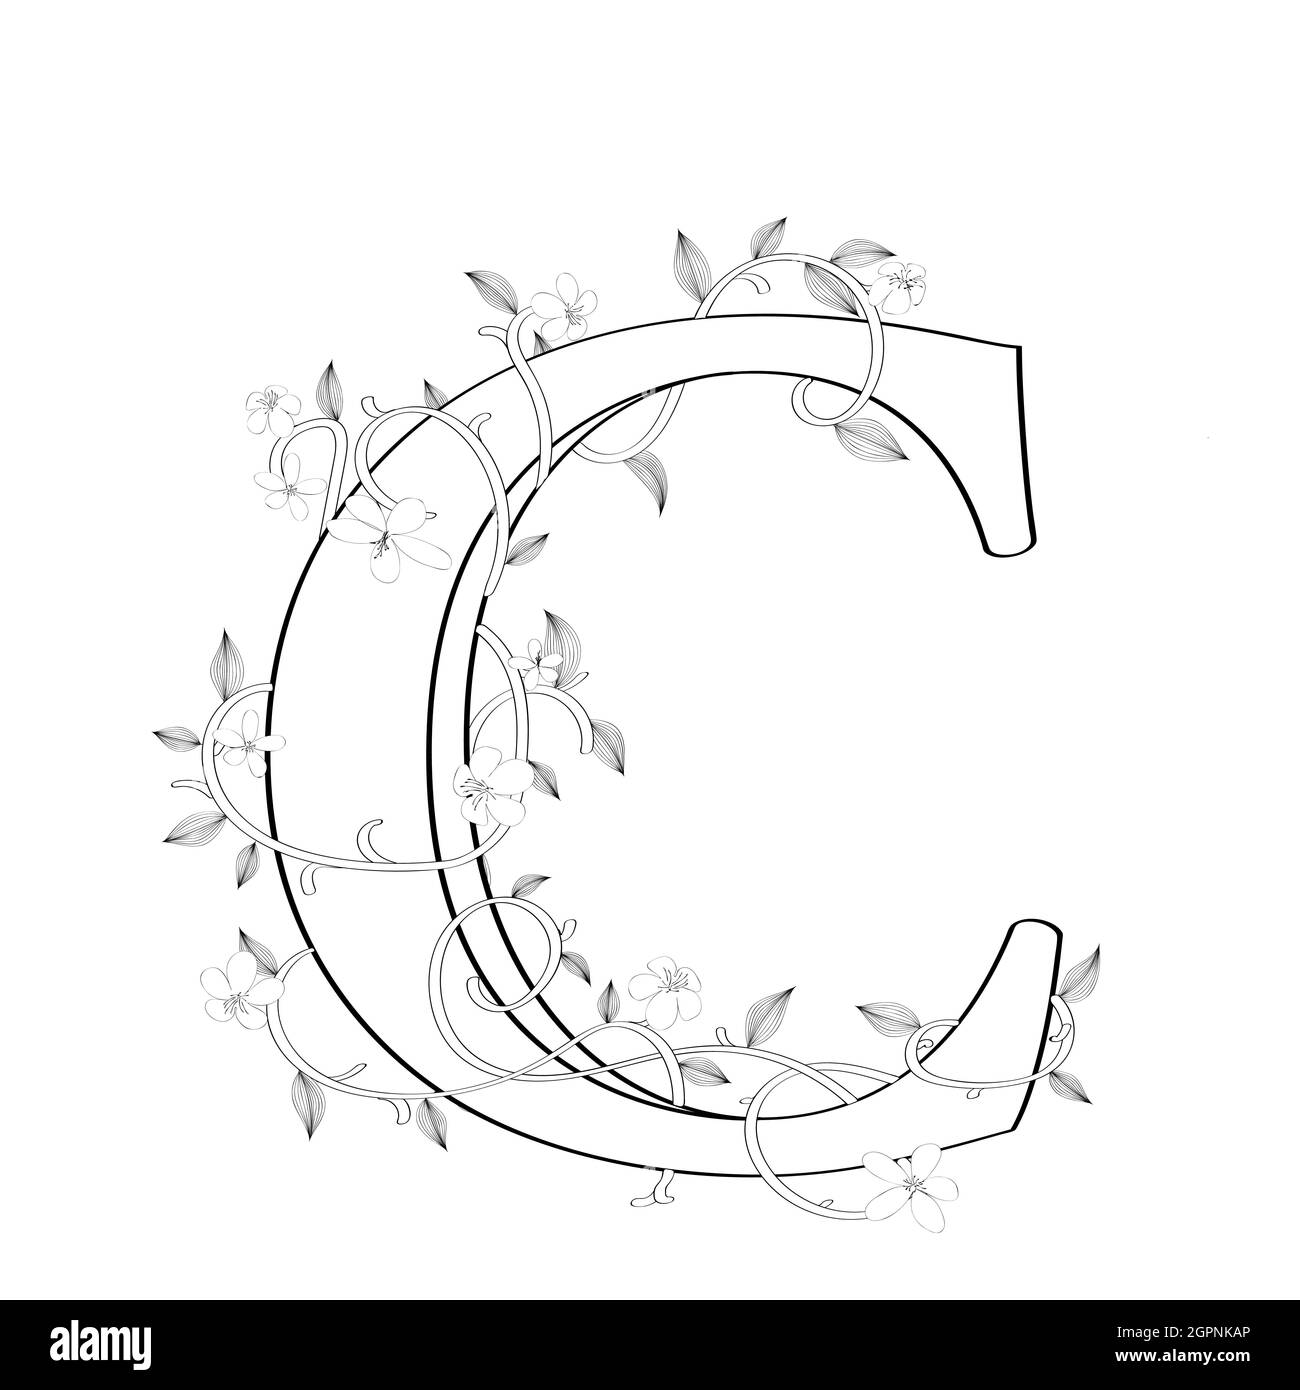 Letter C floral sketch Stock Vector